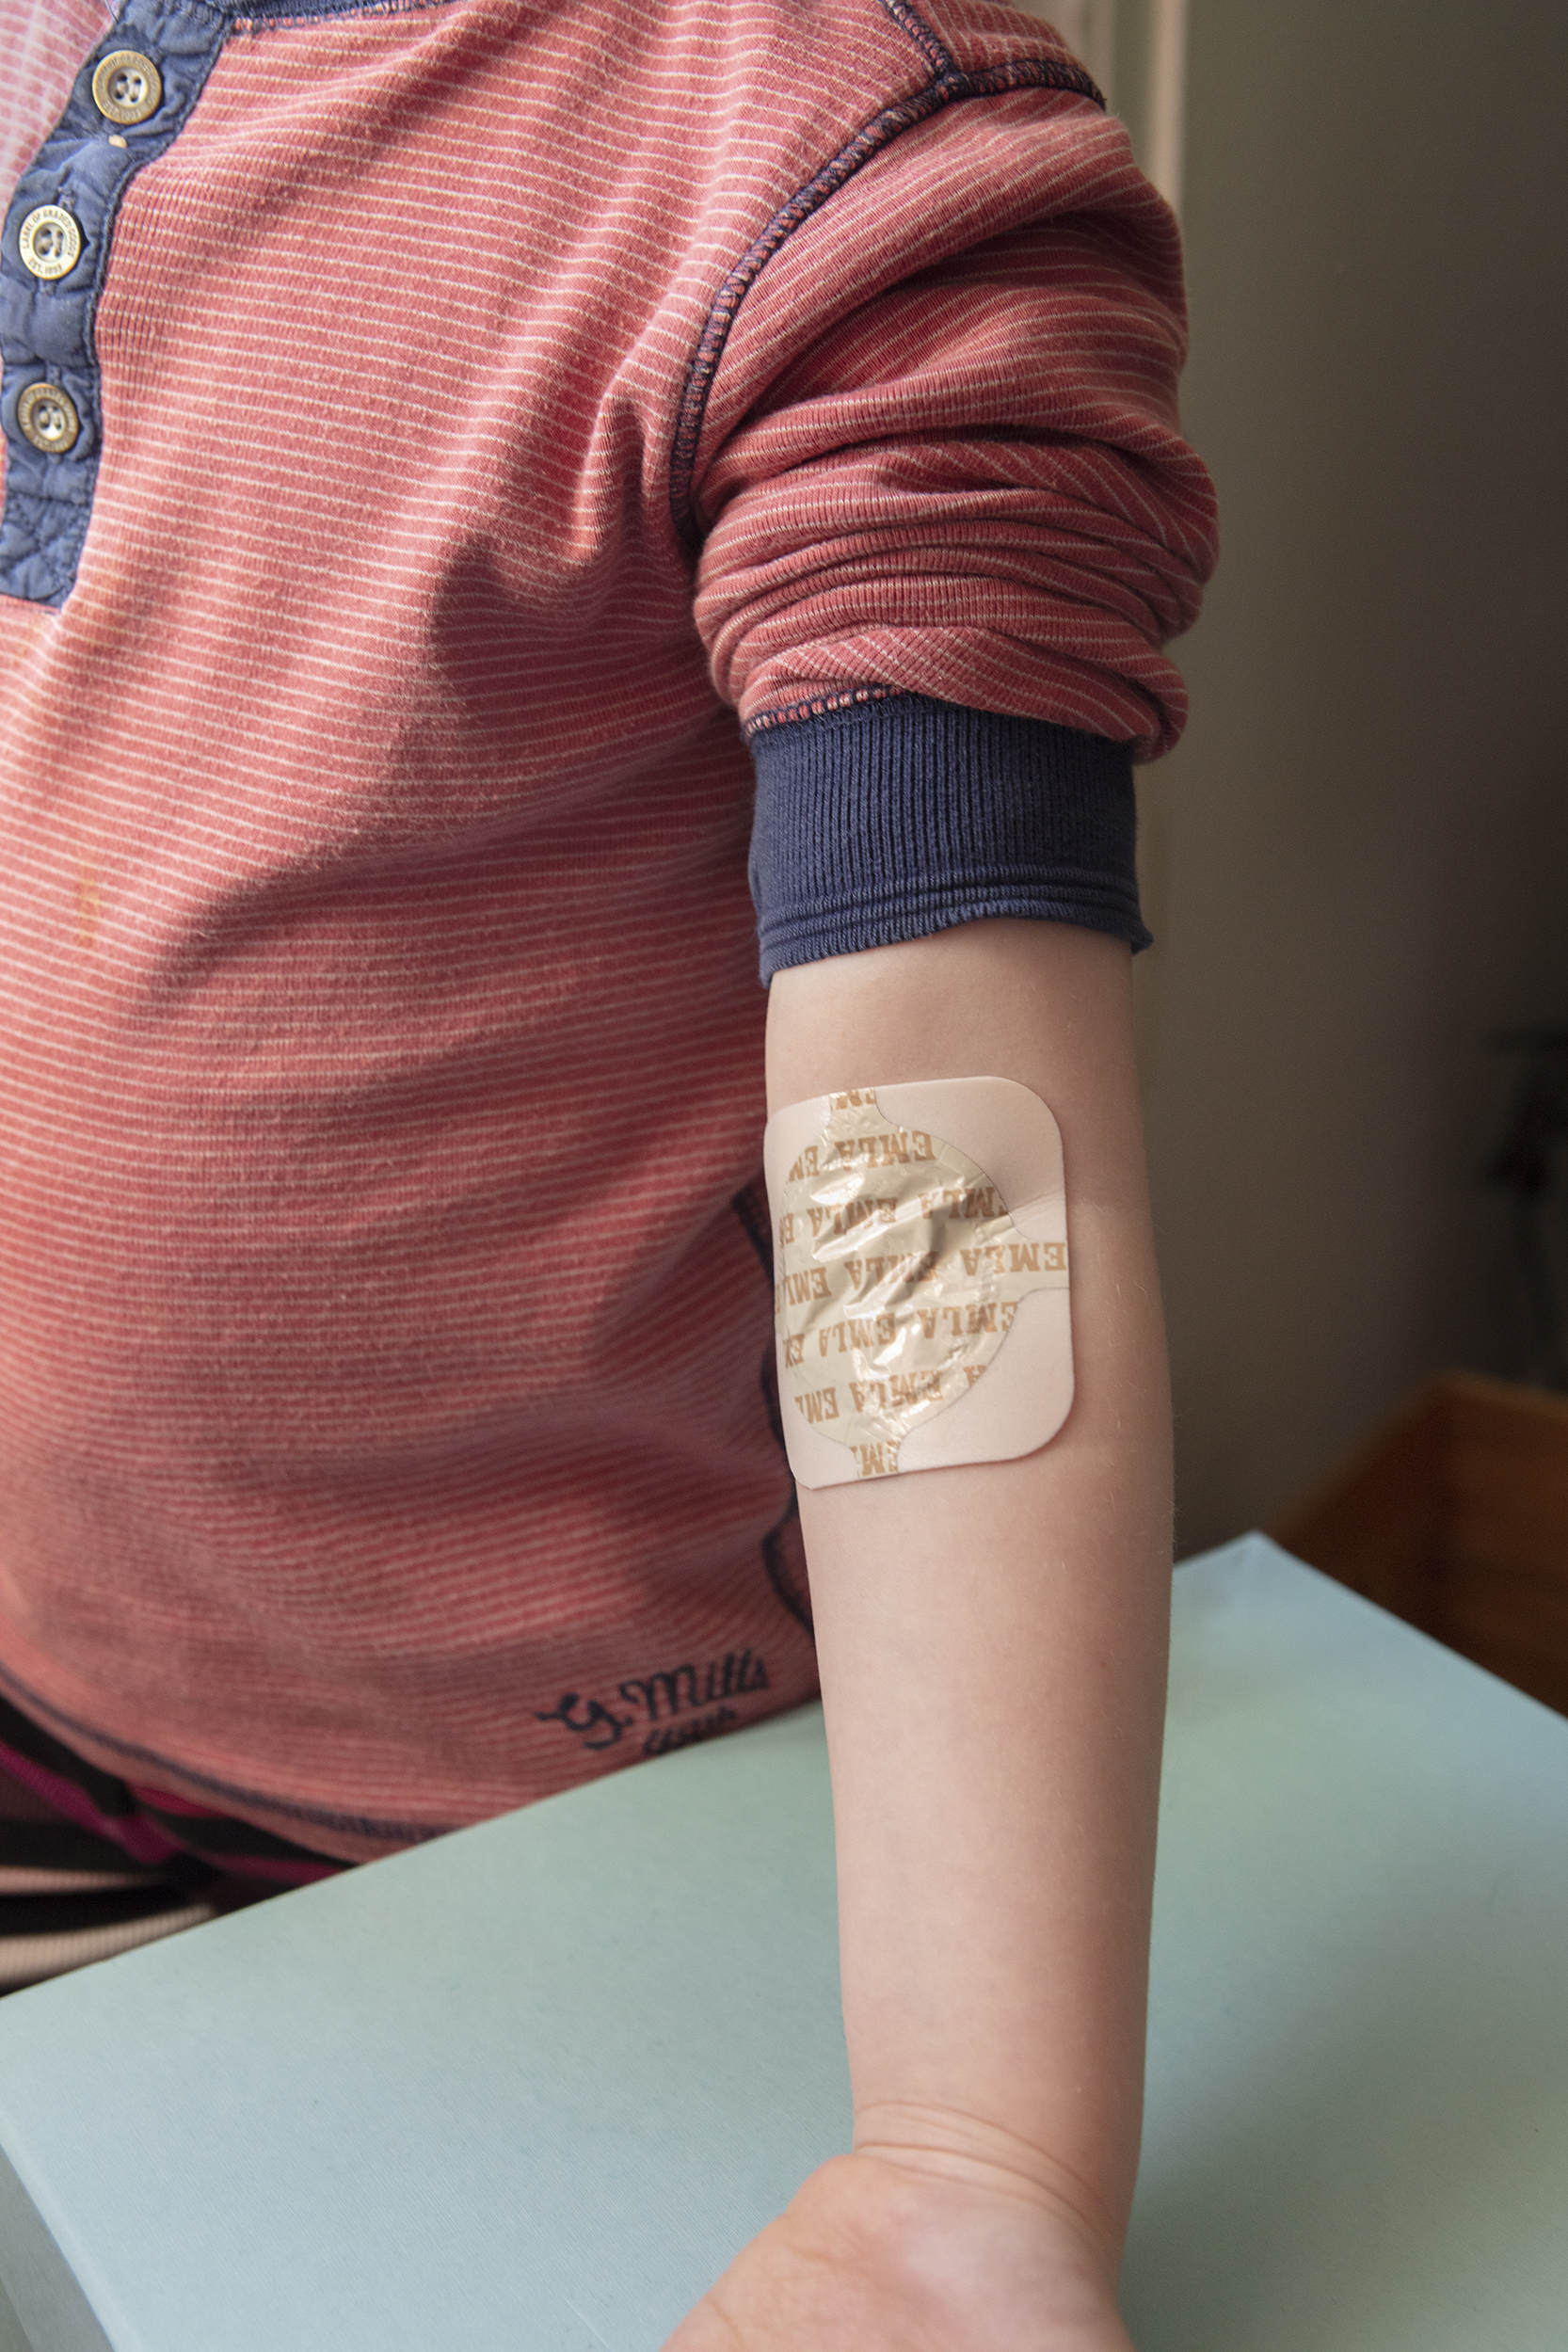 Ett barn har ett bedövningsplåster på ena armvecket.